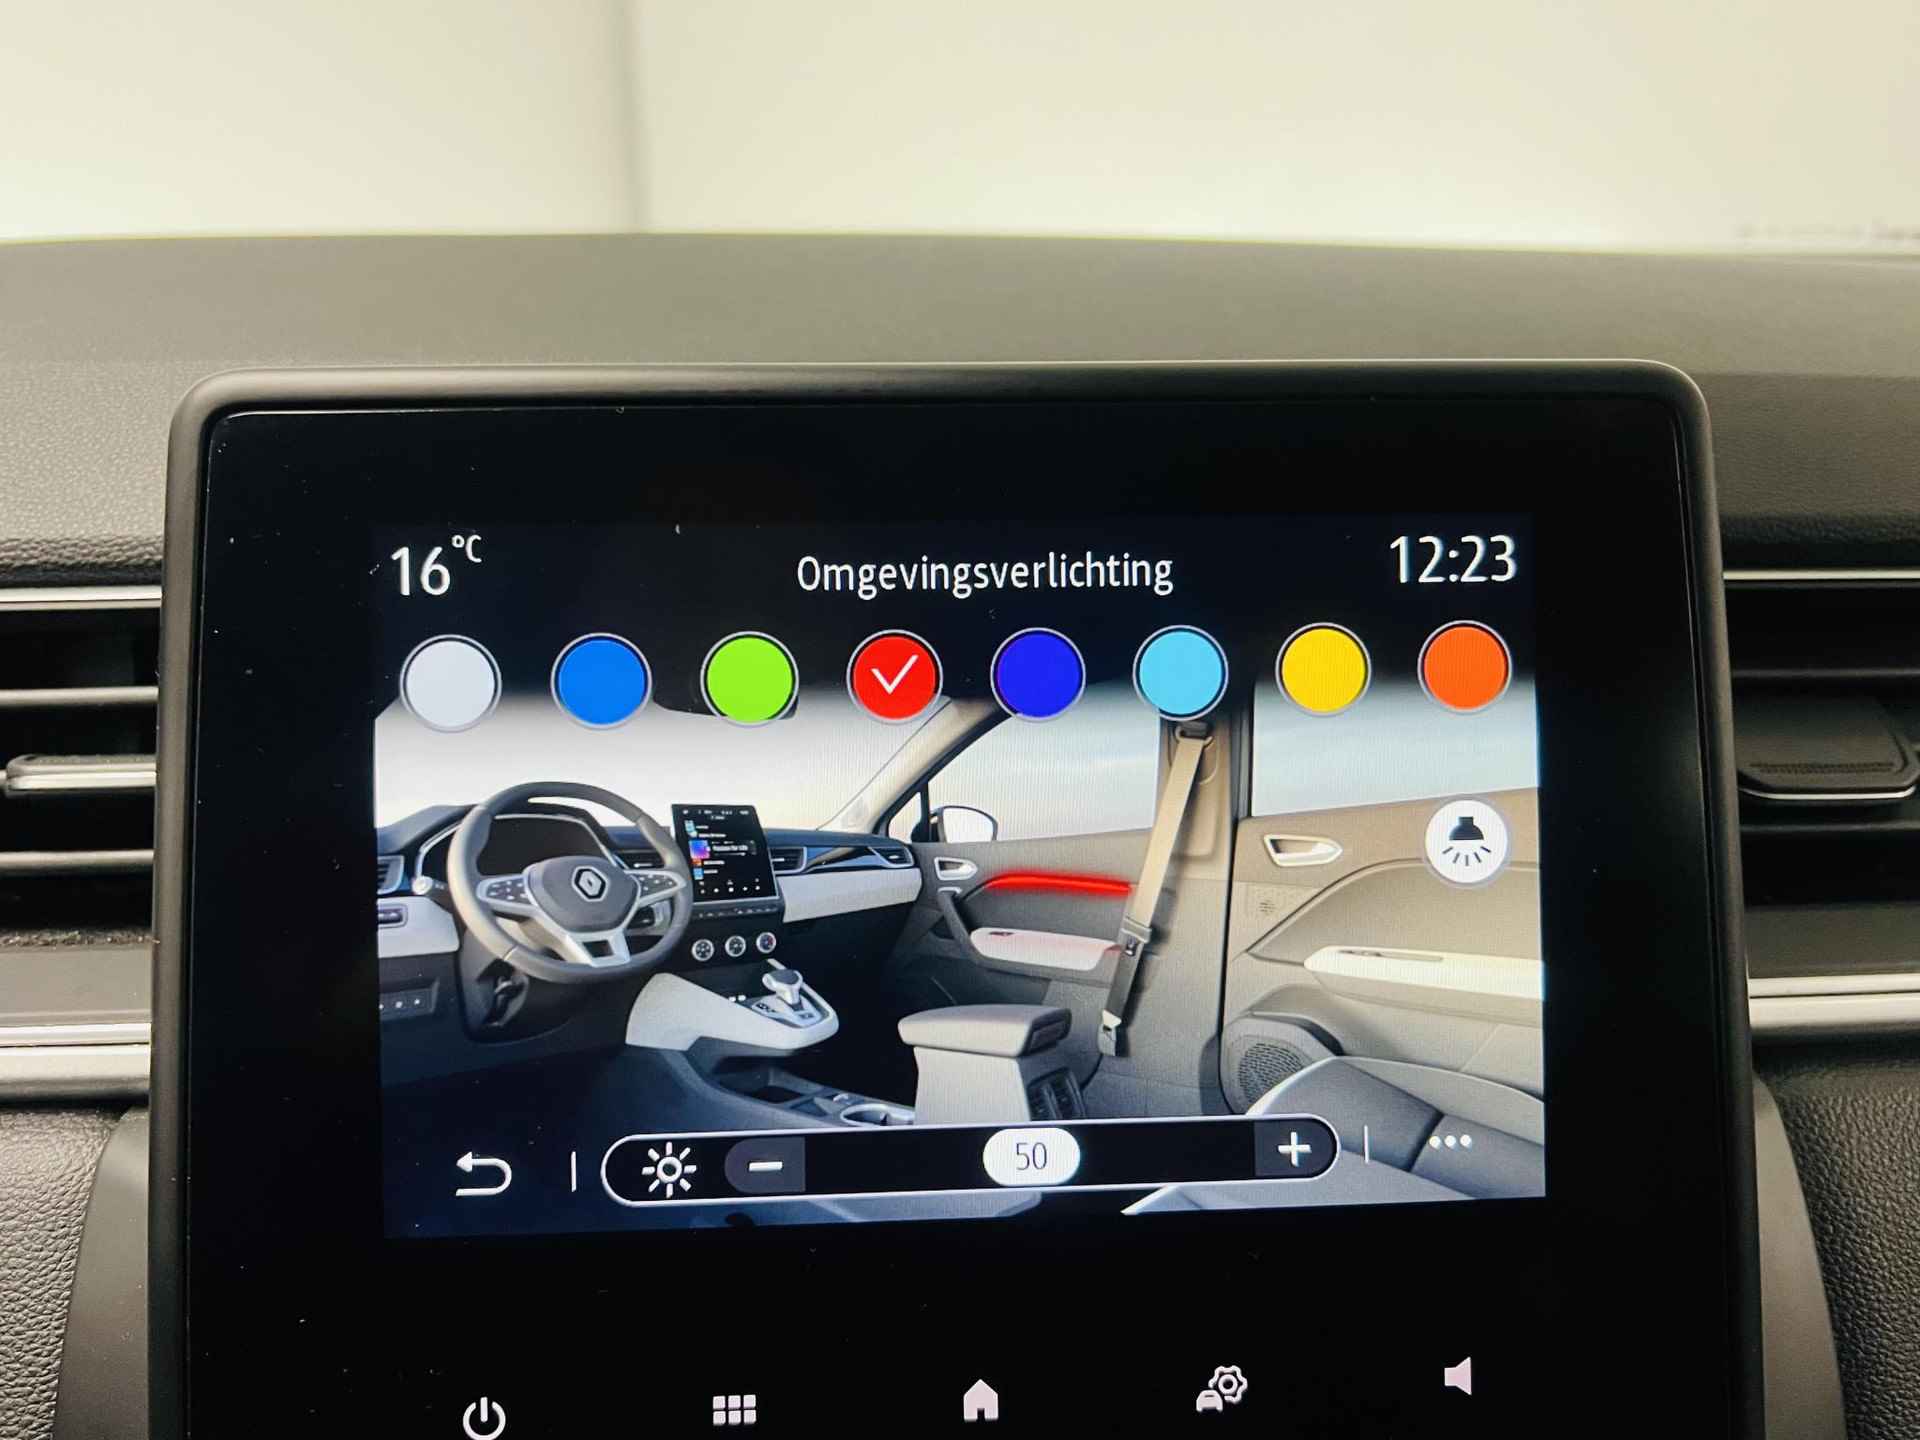 Renault Captur 1.0 TCe 90 Intens Navi airco camera parkeersensoren TREKHAAk hoge instap lm velgen apple carplay android auto zeer mooie auto dealer onderhouden - 19/21